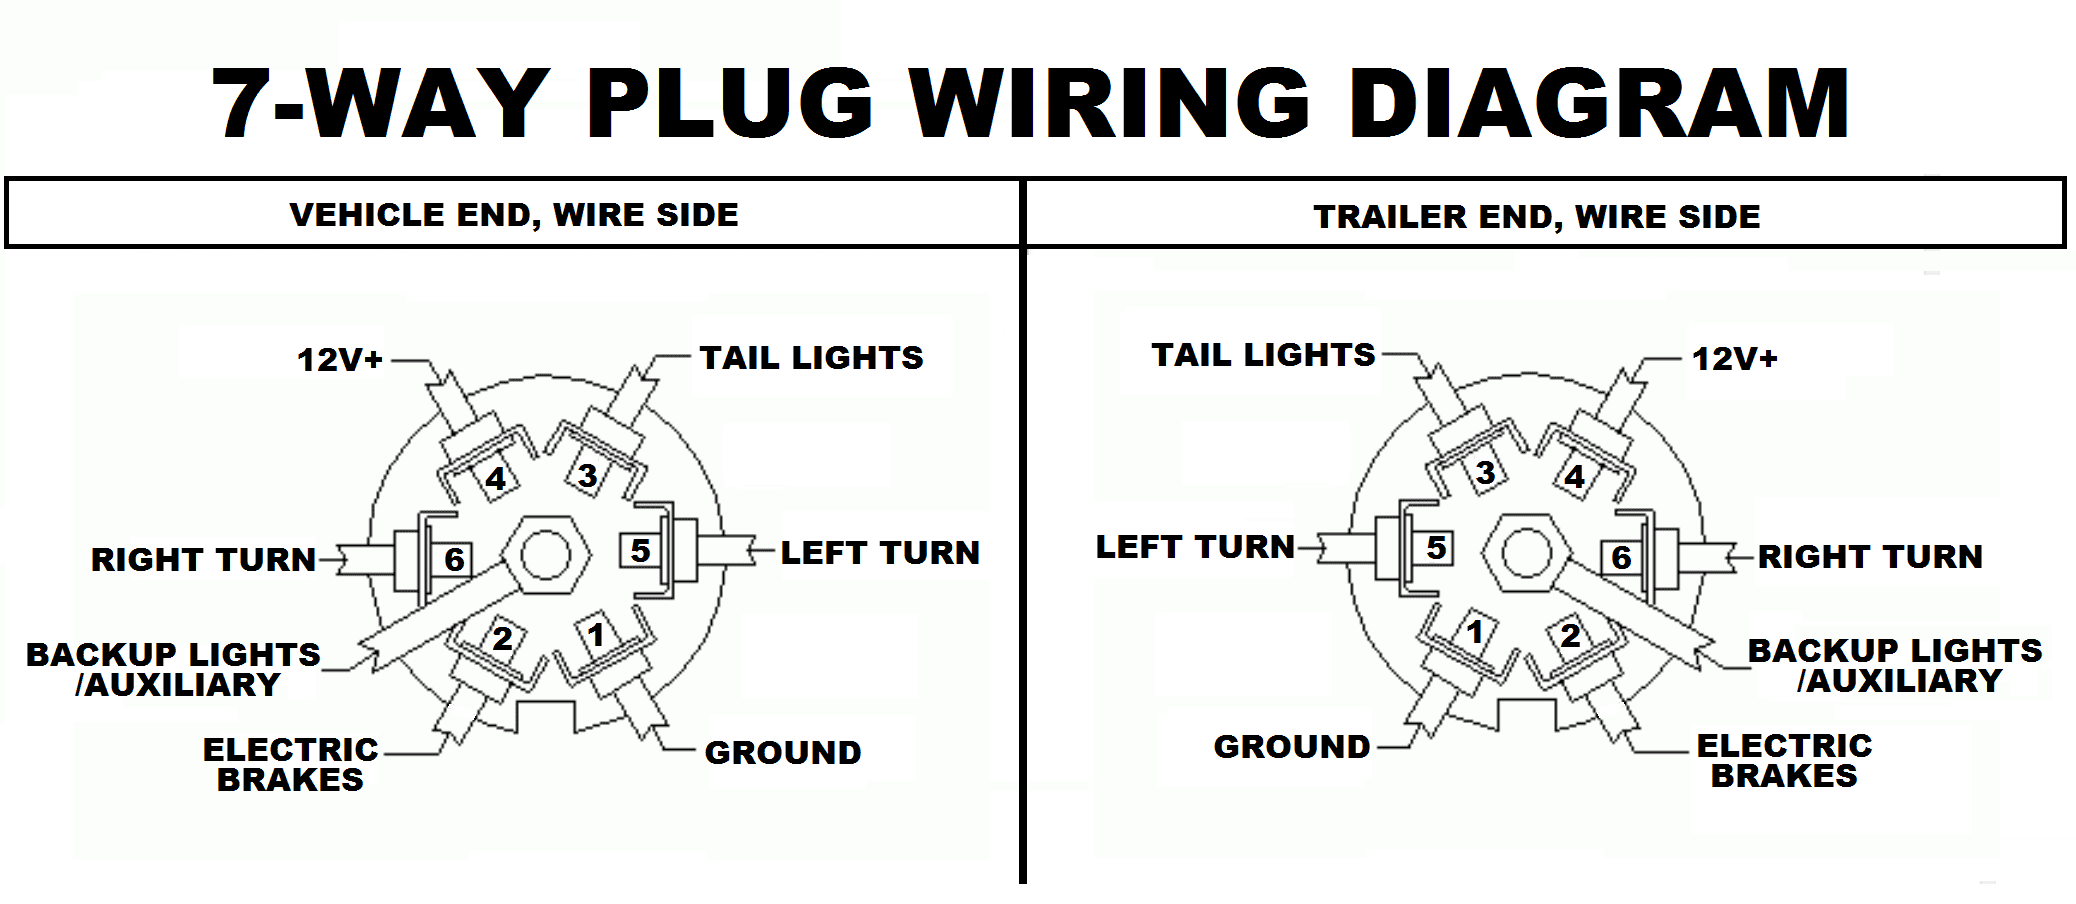 7 way trailer wiring diagram.png